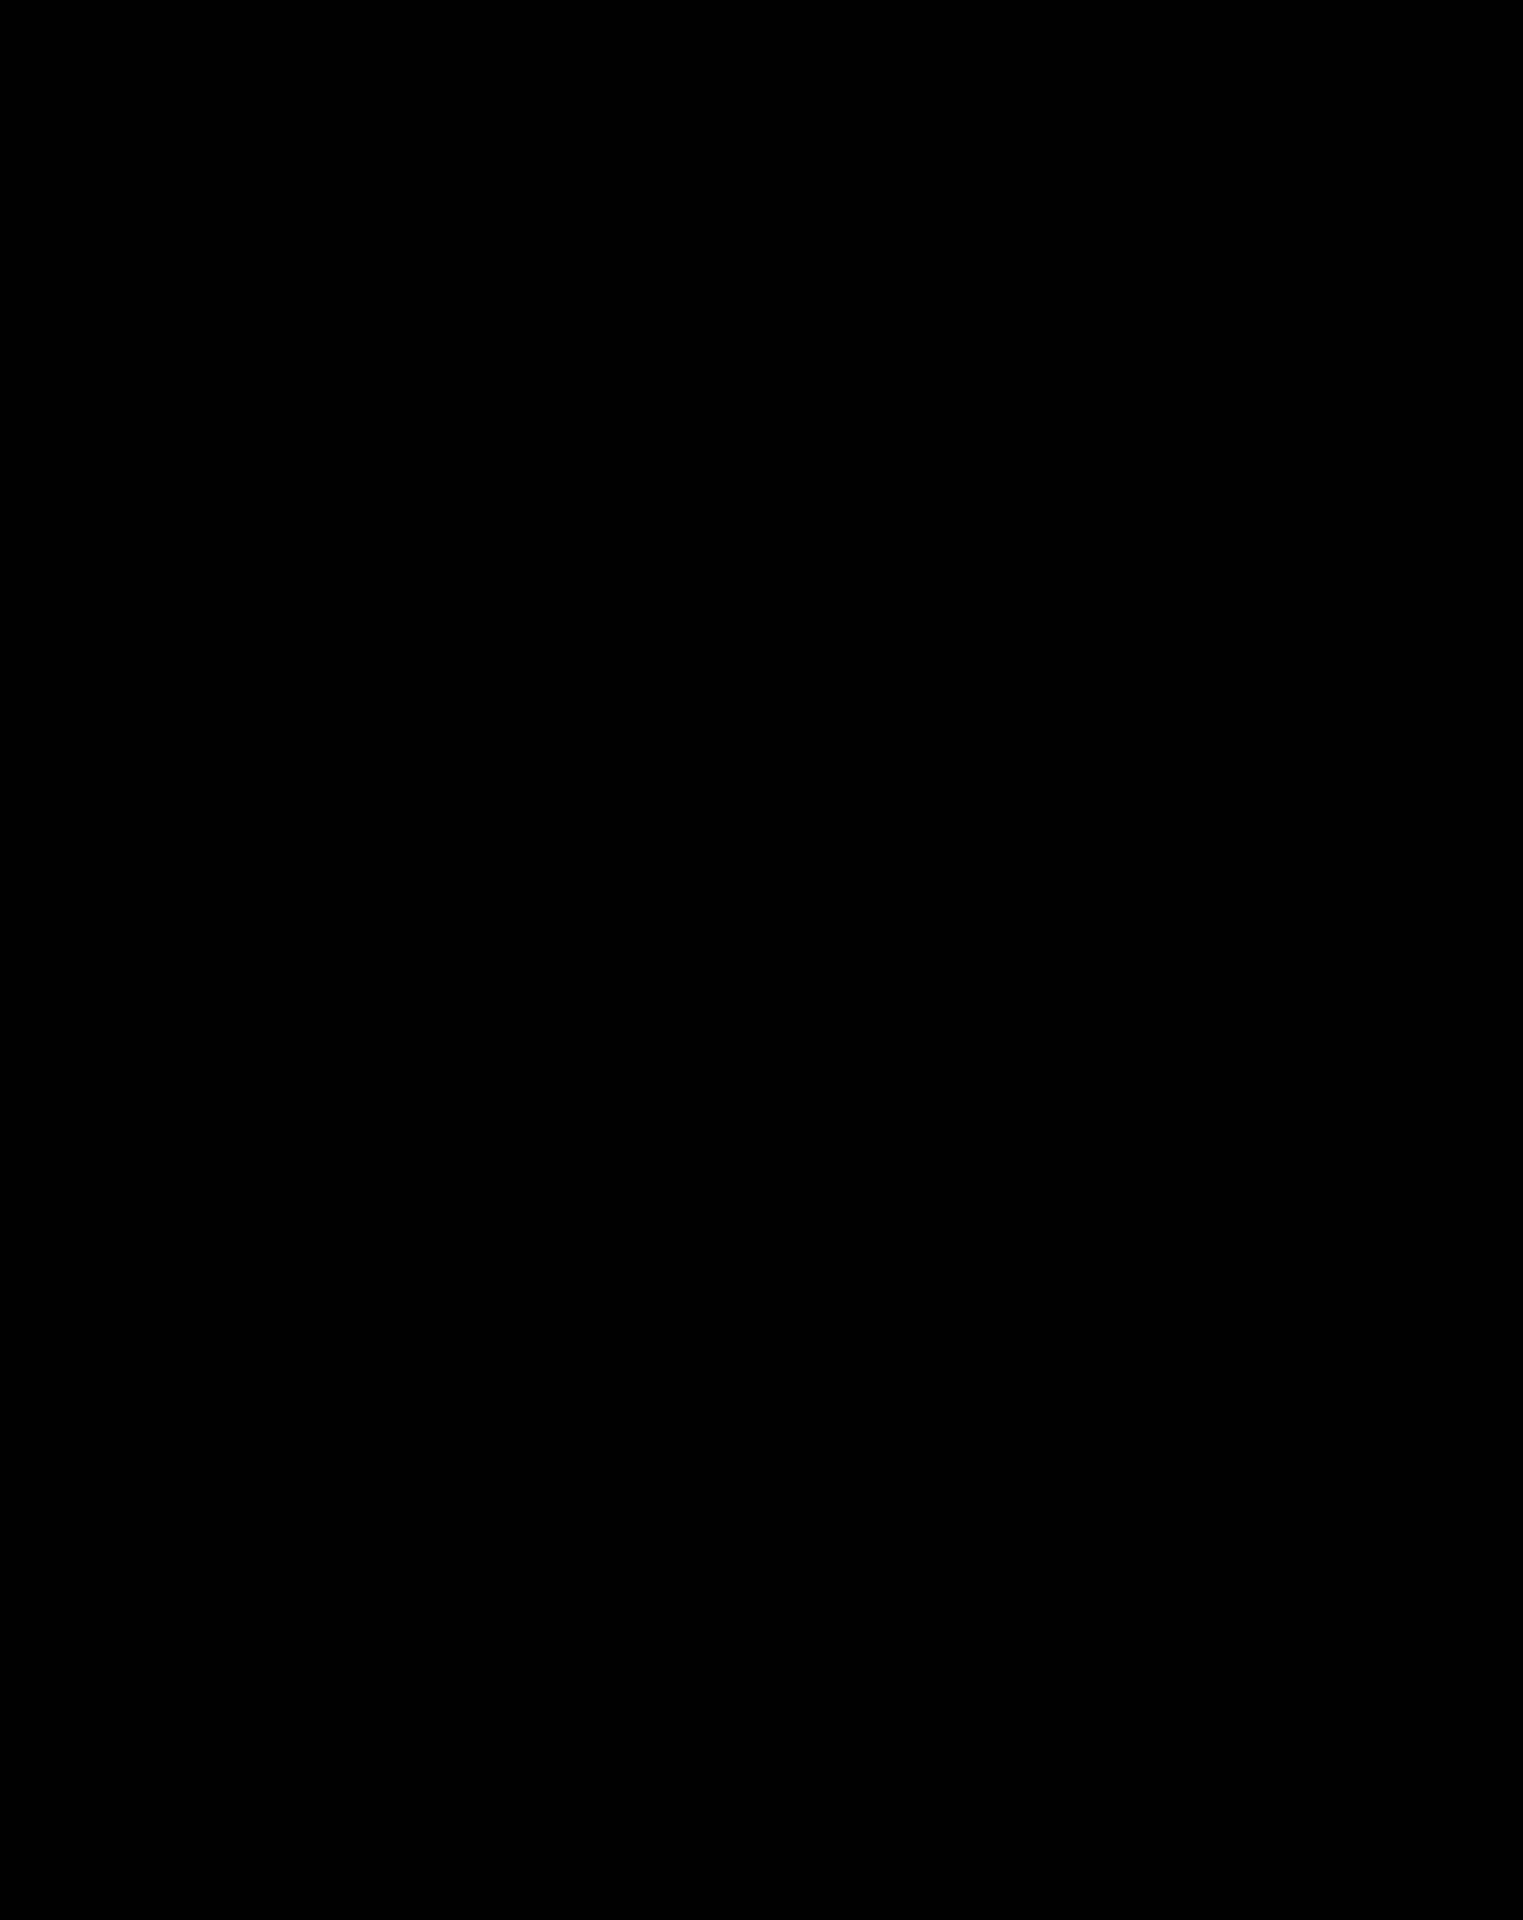 Logotipode Ocean Wise En Blanco Y Negro. Fondo de pantalla